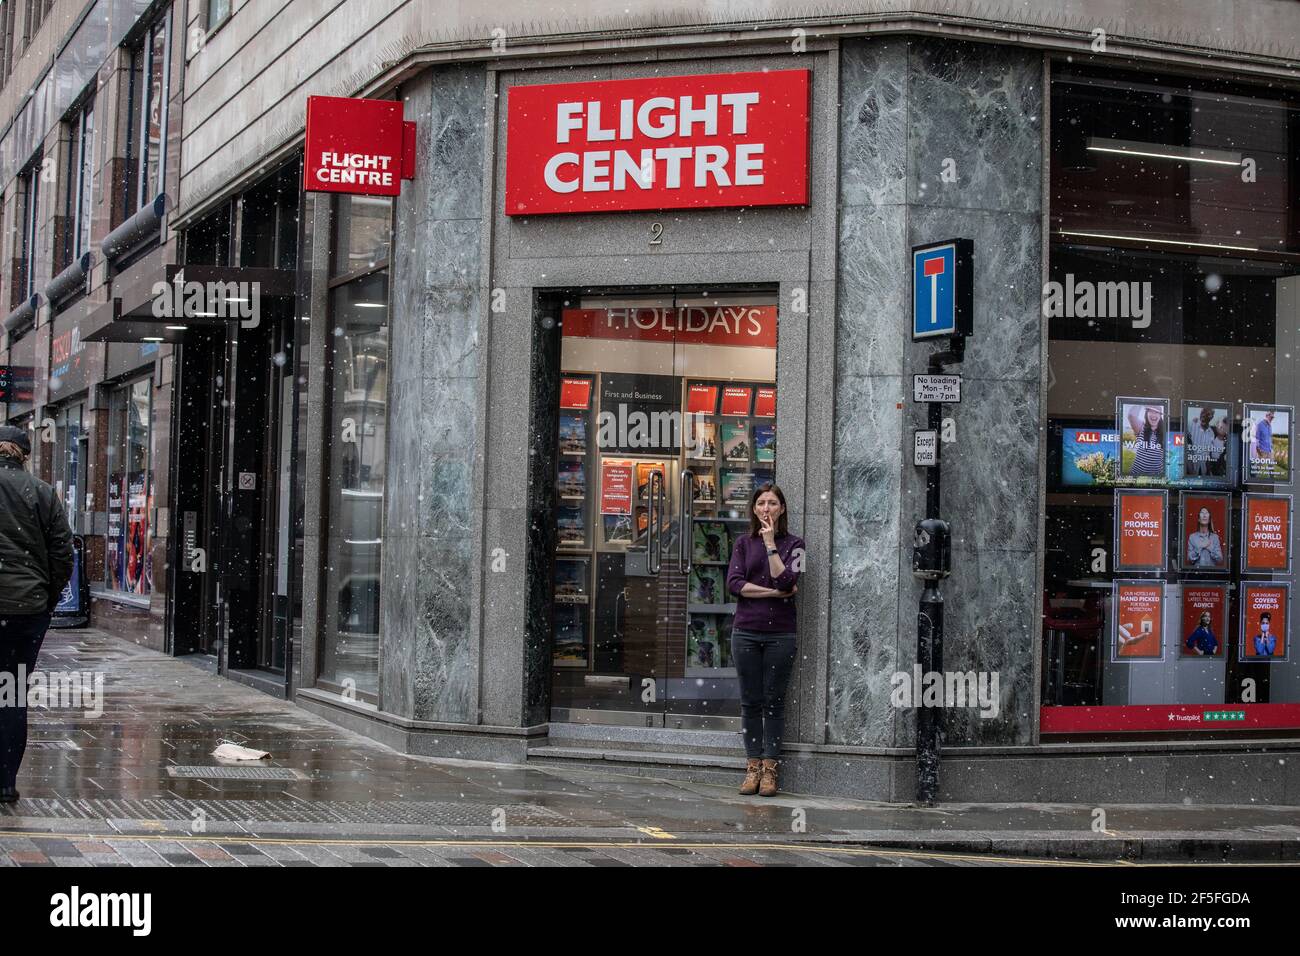 Una donna fa una pausa fuori da un'agenzia di viaggi vuota del Flight Center vicino a London Bridge durante il blocco del coronavirus nel marzo 2021, Londra, Inghilterra, Regno Unito Foto Stock